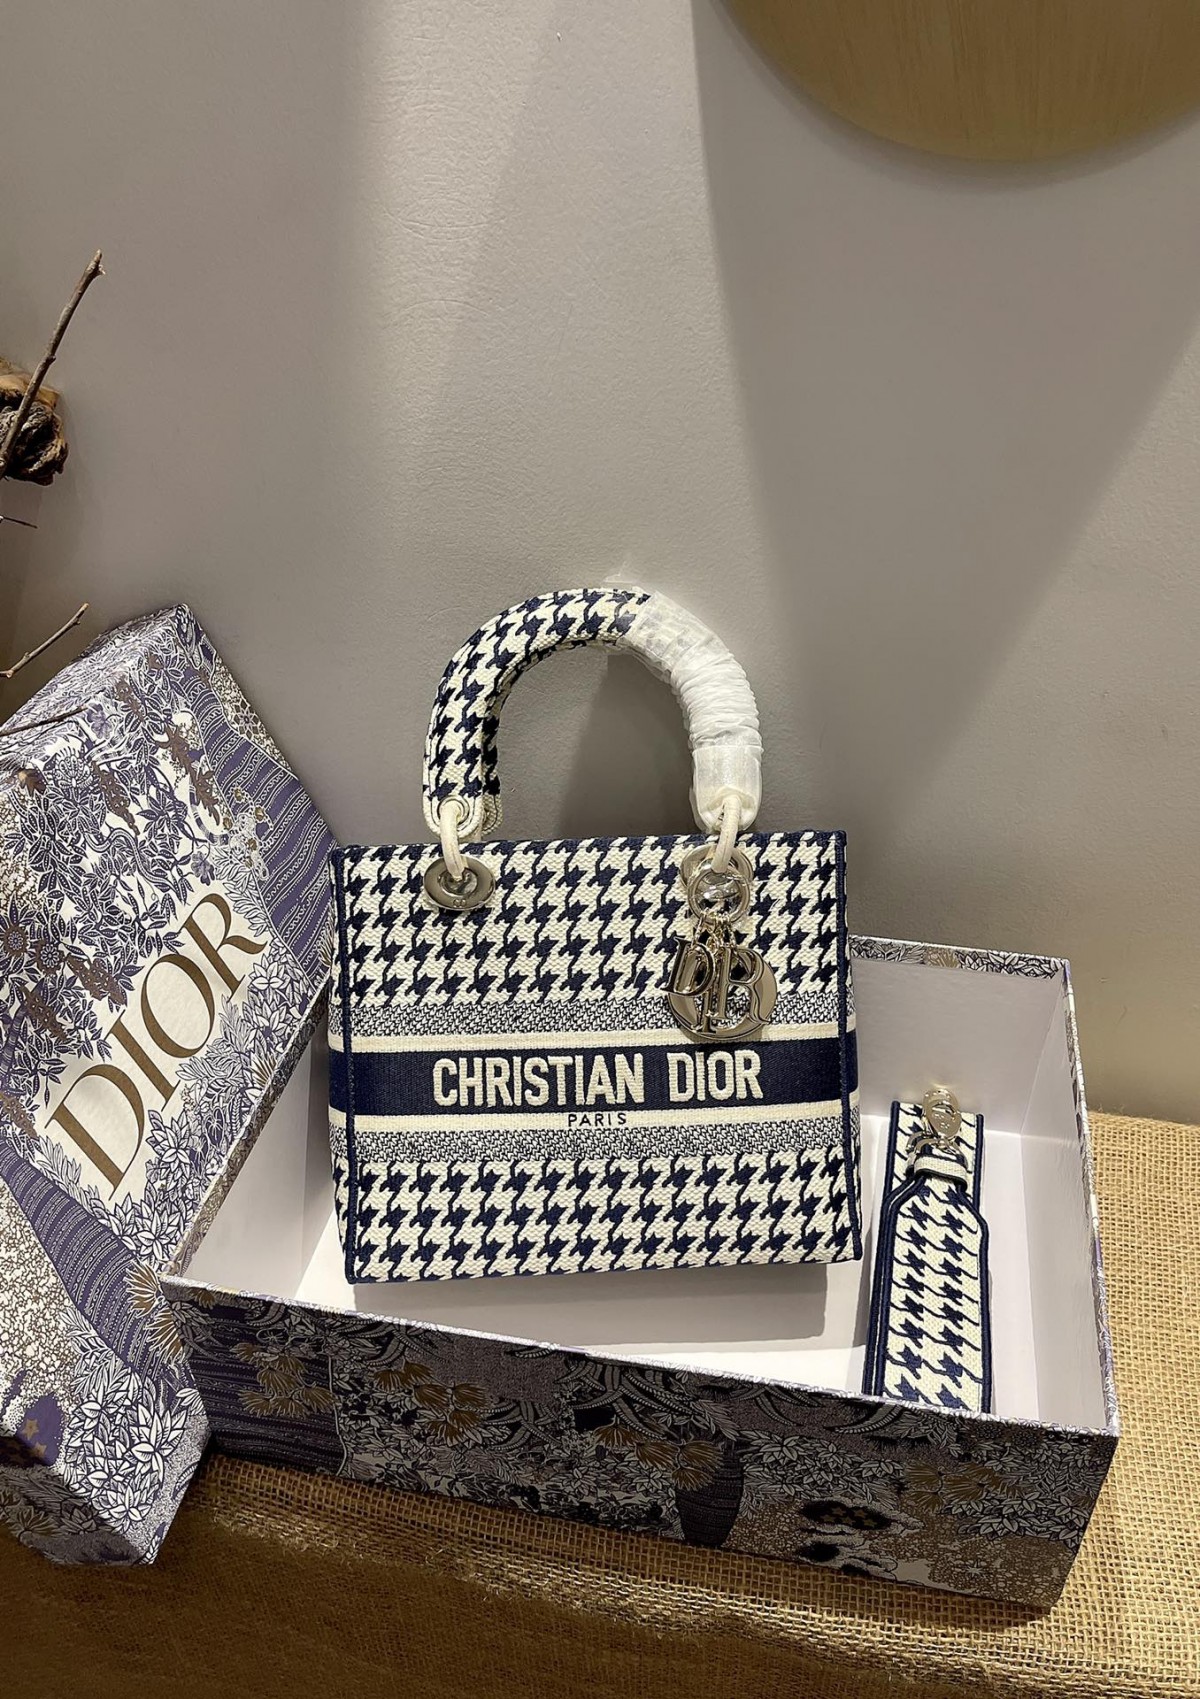 Skuins Lady Dior replika sakke is so pragtig! (Spesiaal 2022)-Beste kwaliteit Vals Louis Vuitton-sak aanlynwinkel, Replika-ontwerperssak ru